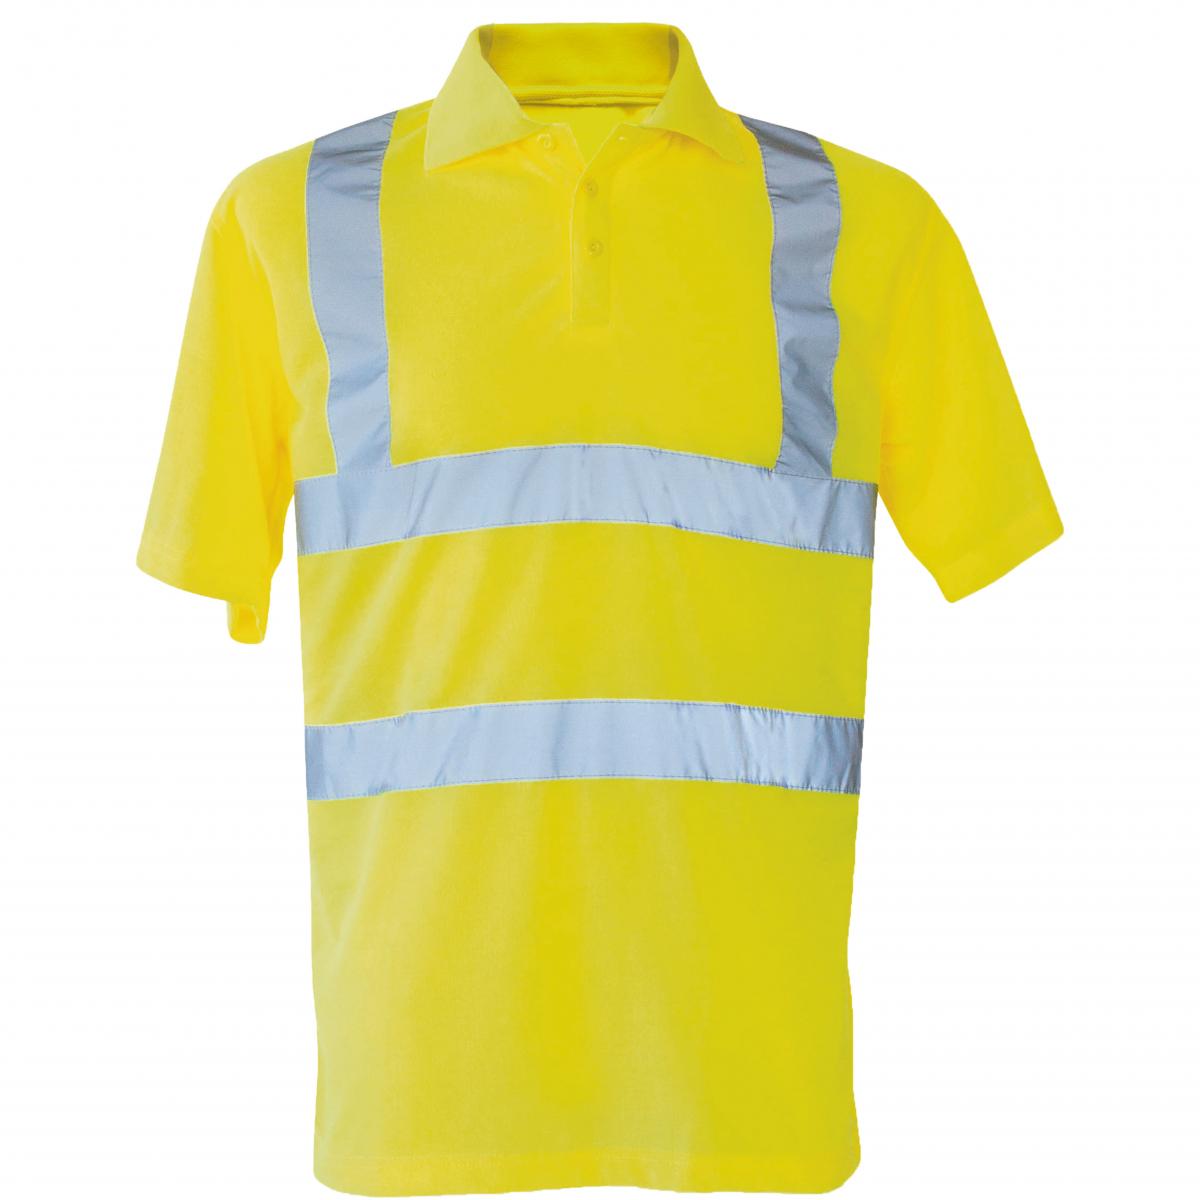 Hersteller: Korntex Herstellernummer: KXPOLO Artikelbezeichnung: Herren Hi-Viz Arbeits Polo Shirt Basic EN ISO 20471 Farbe: Signal Yellow